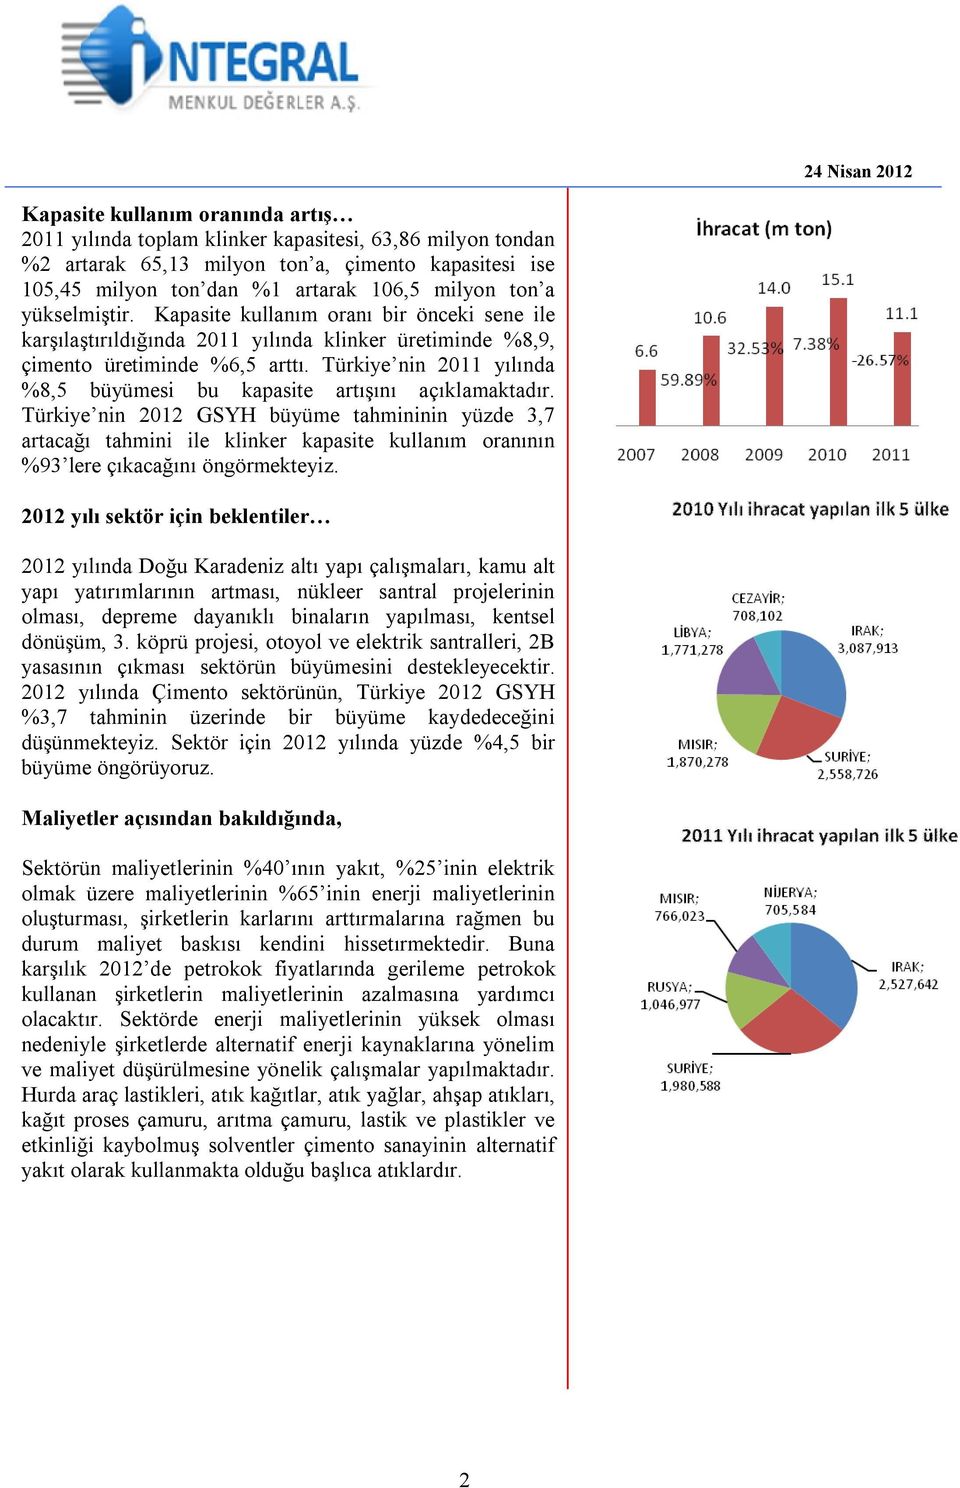 Türkiye nin 2011 yılında %8,5 büyümesi bu kapasite artışını açıklamaktadır.